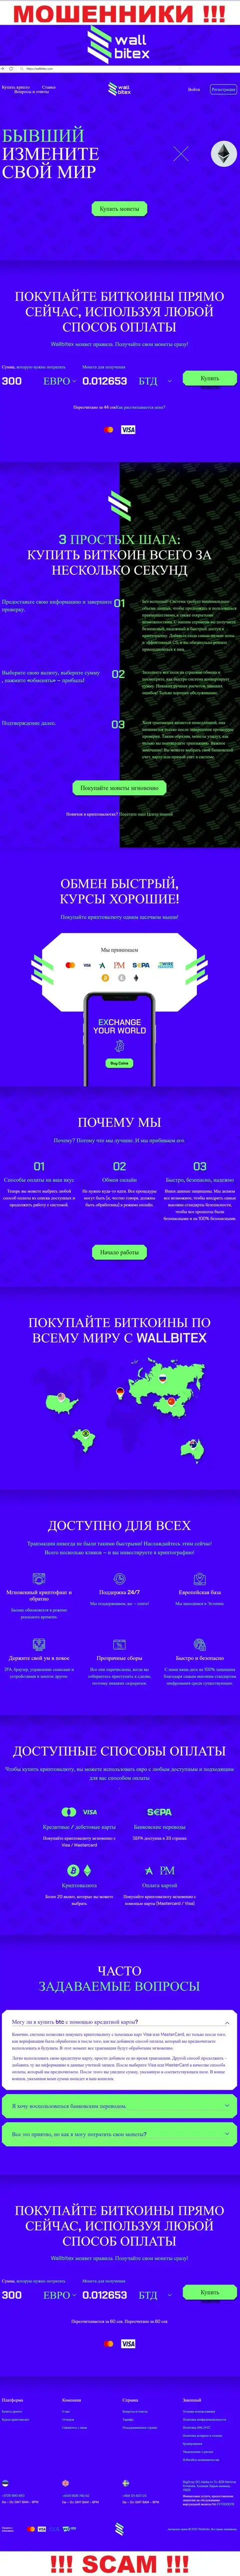 WallBitex Com - это официальный сайт мошеннической конторы WallBitex